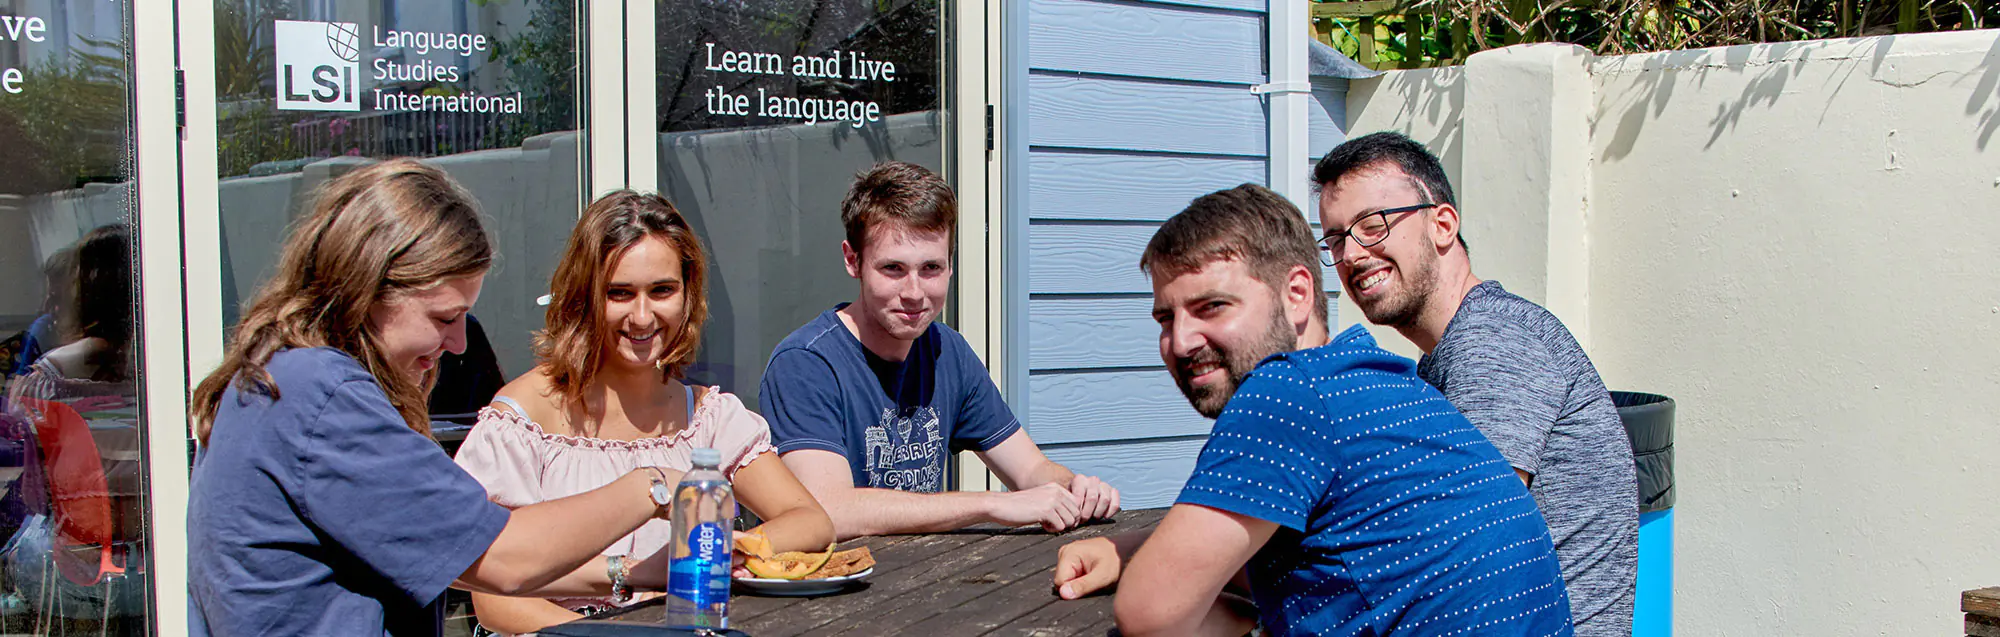 Als Bildungsurlaub anerkannte Sprachkurse bei LSI Brighton